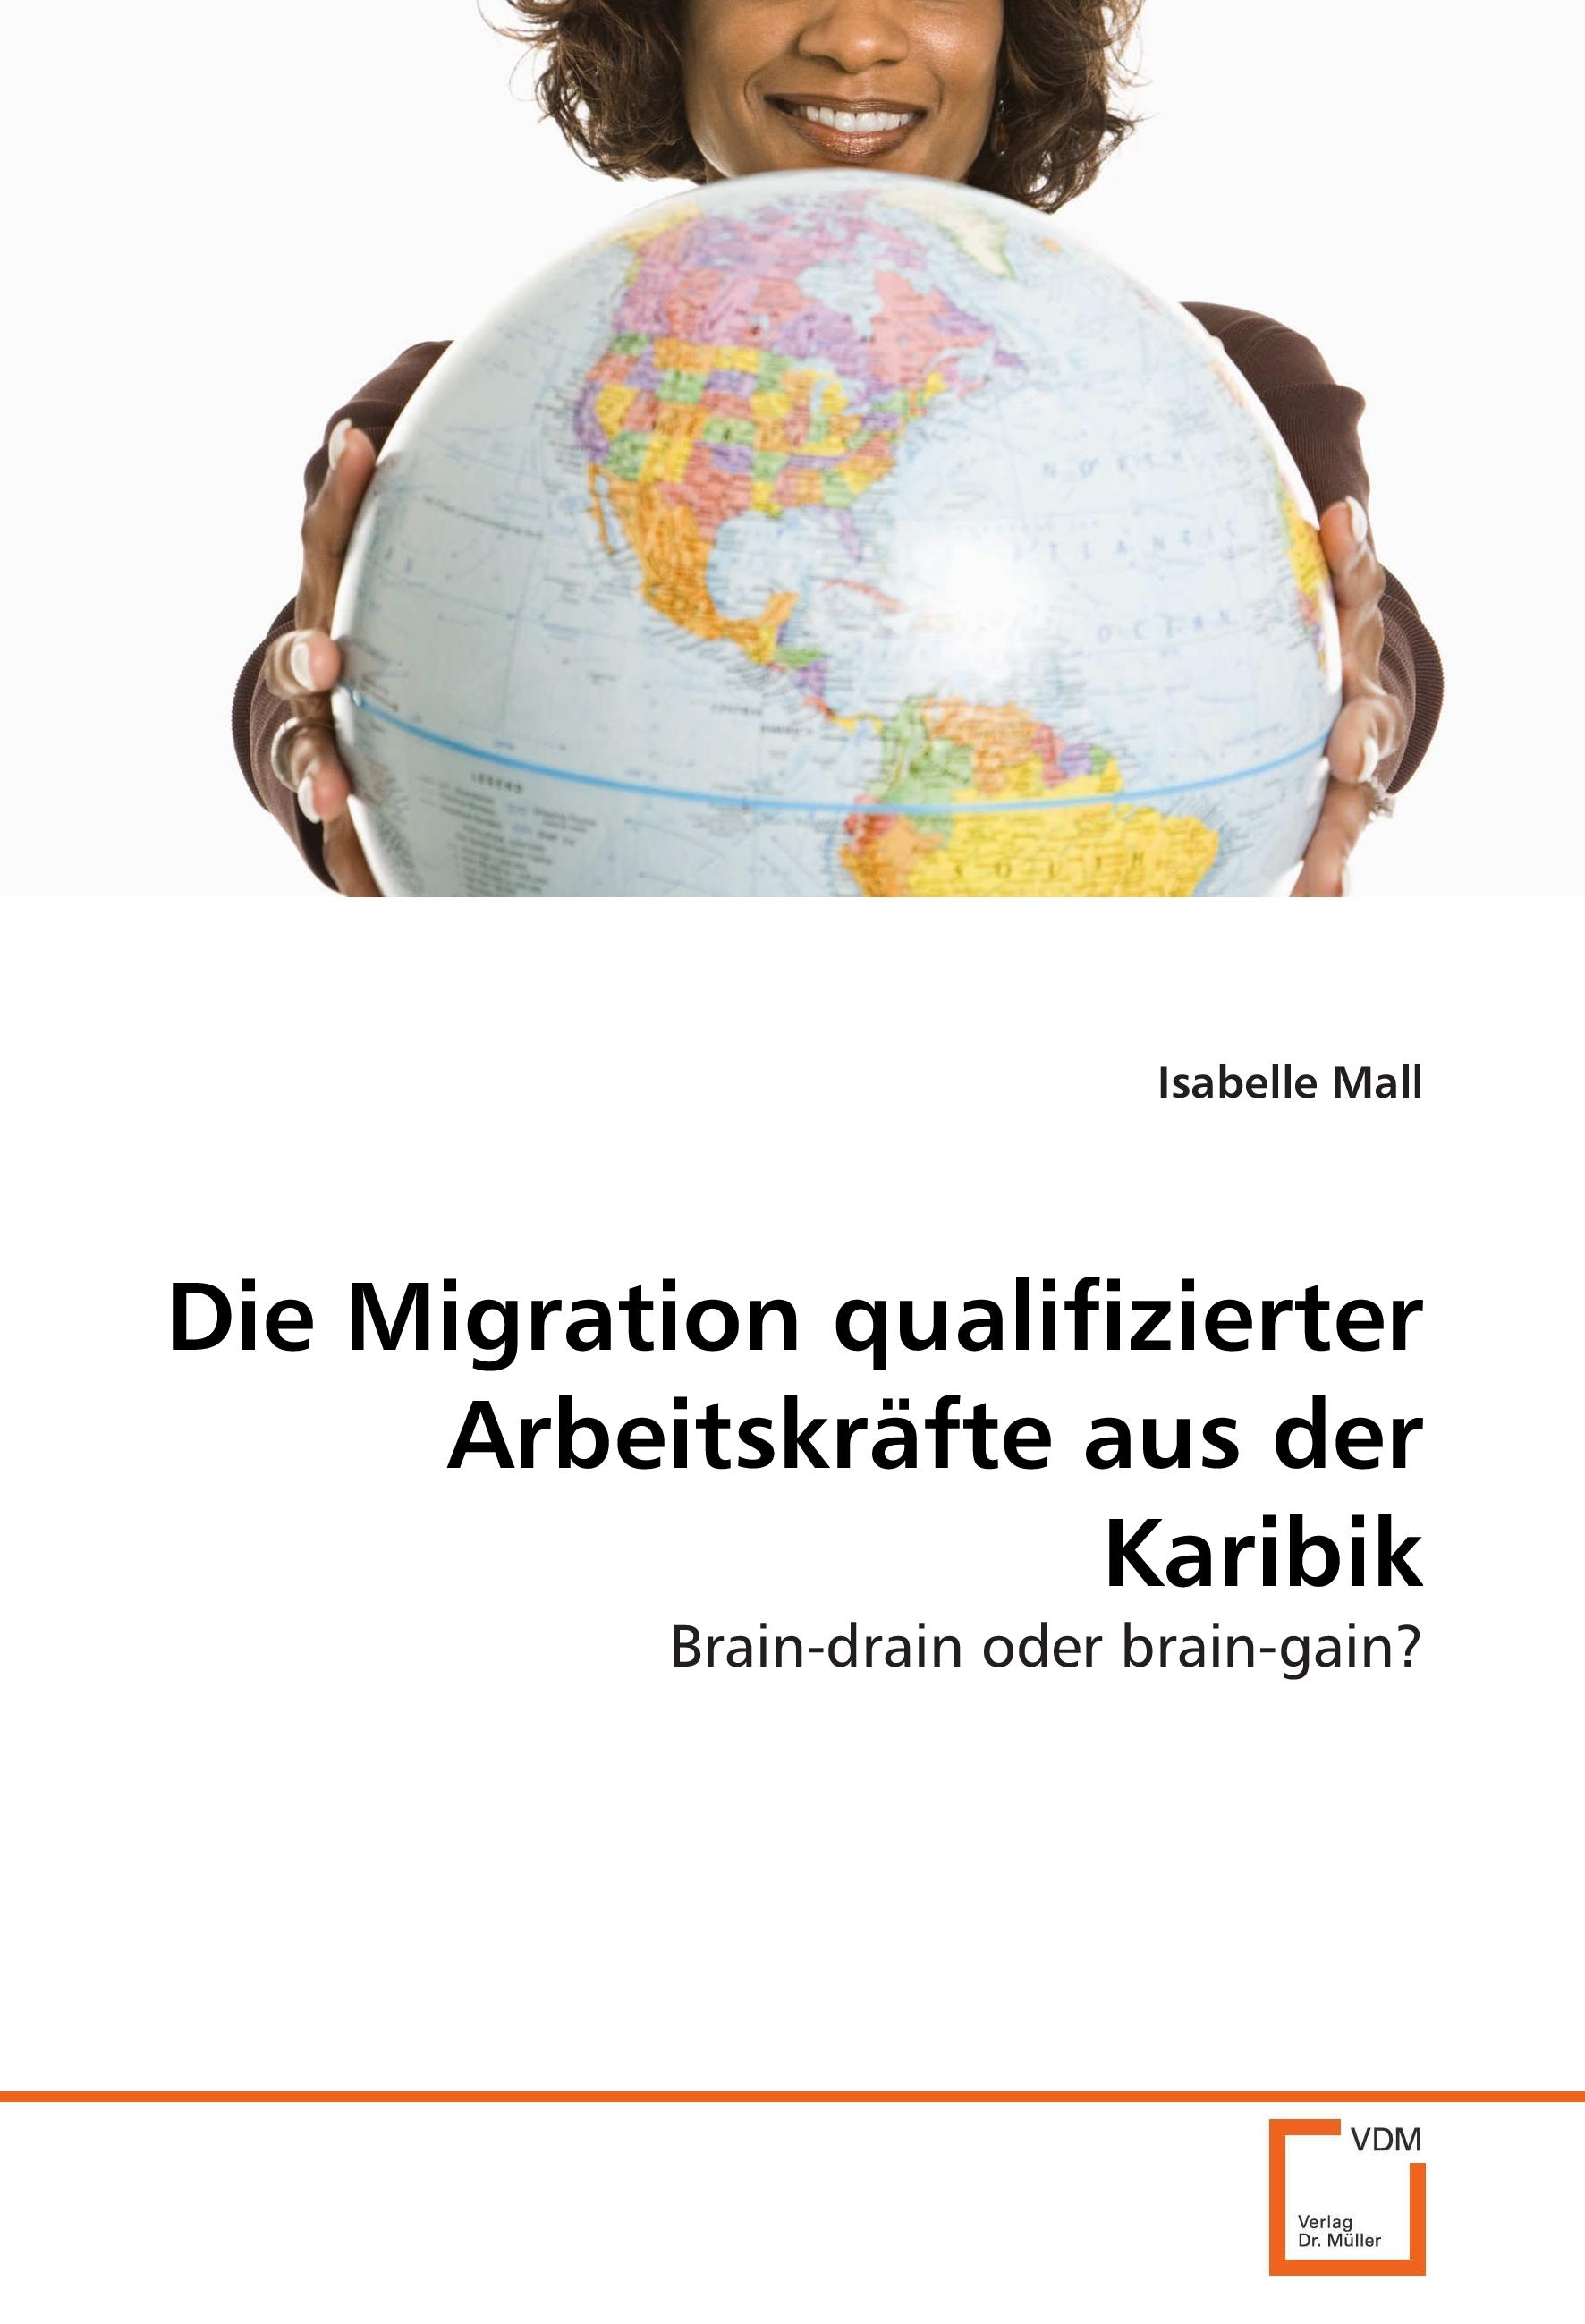 Die Migration qualifizierter Arbeitskräfte aus der Karibik | Brain-drain oder brain-gain? | Isabelle Mall | Taschenbuch | Paperback | 80 S. | Deutsch | 2013 | VDM Verlag Dr. Müller e.K. - Mall, Isabelle